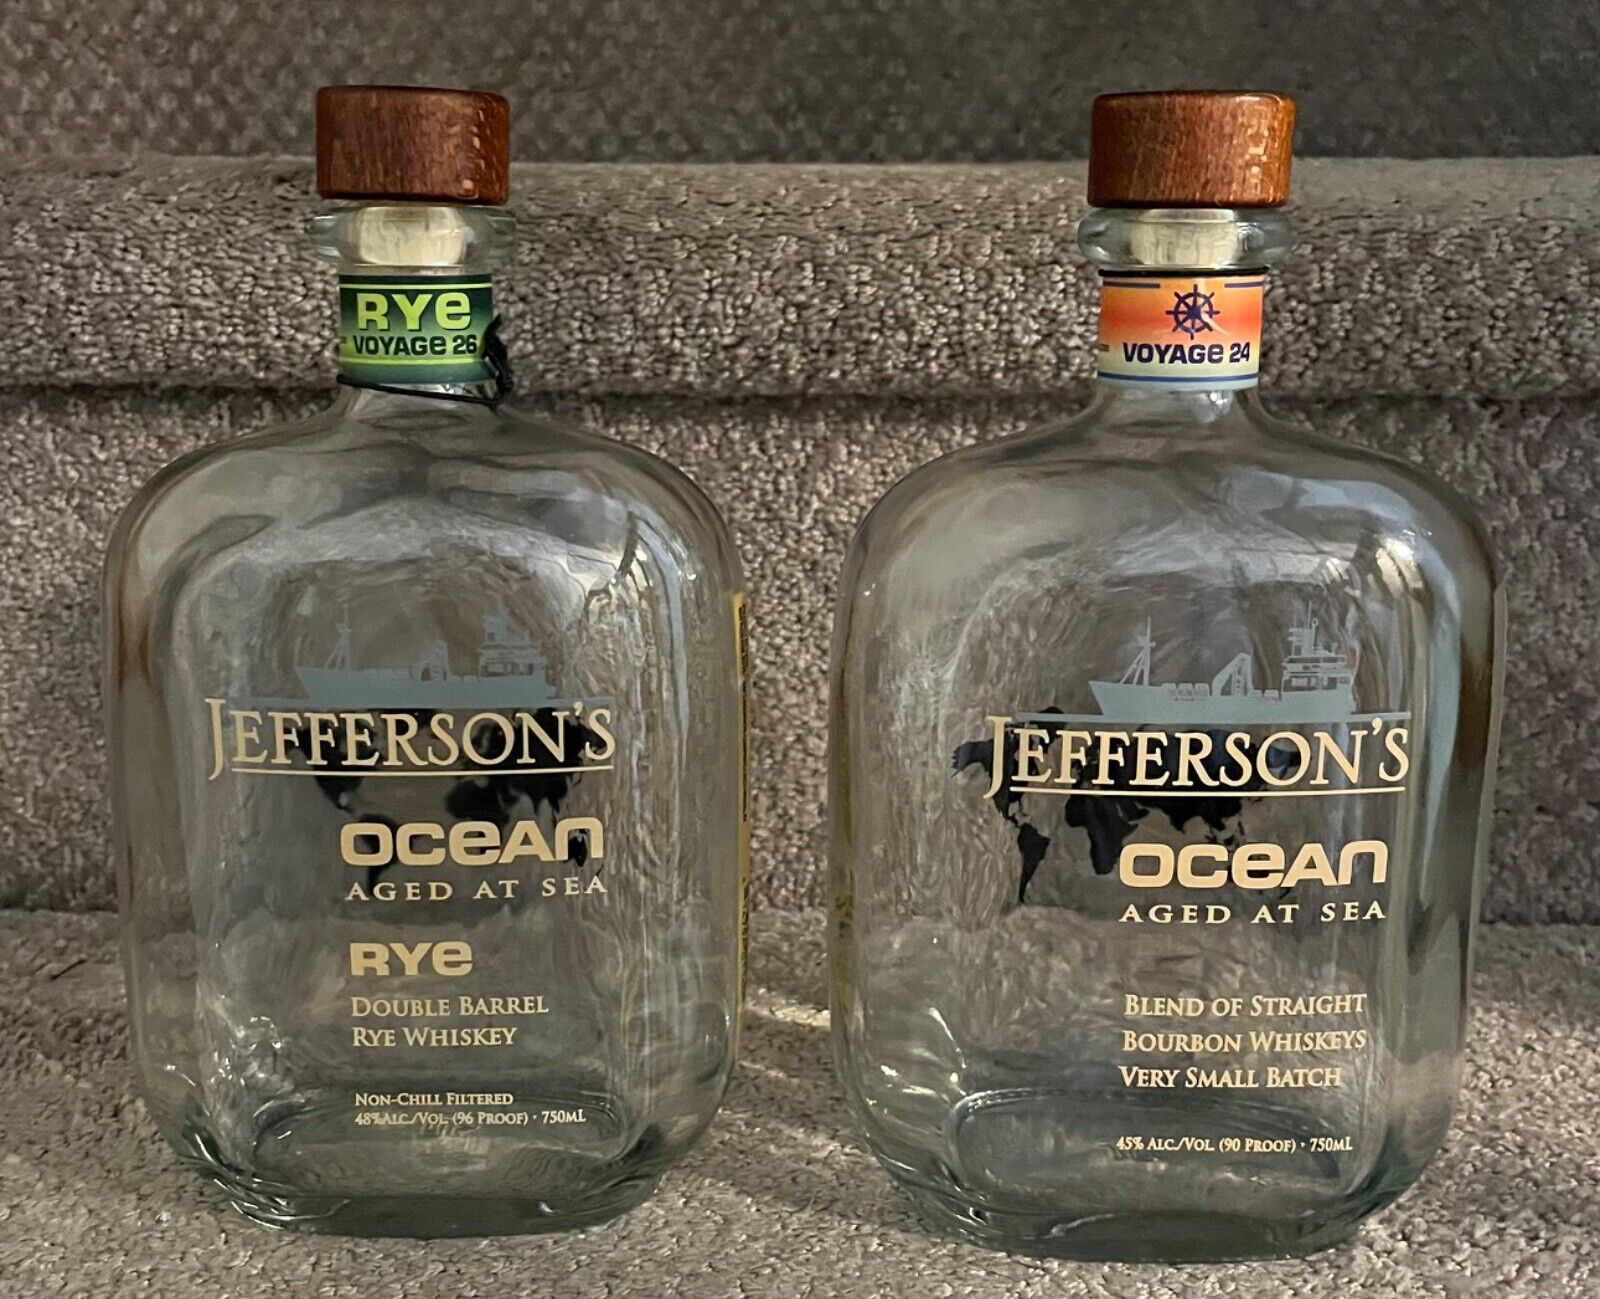 Jefferson’s Ocean Lot Of 2 Empty Bottles/Voyage 24 (Bourbon) & Voyage 26 (Rye)